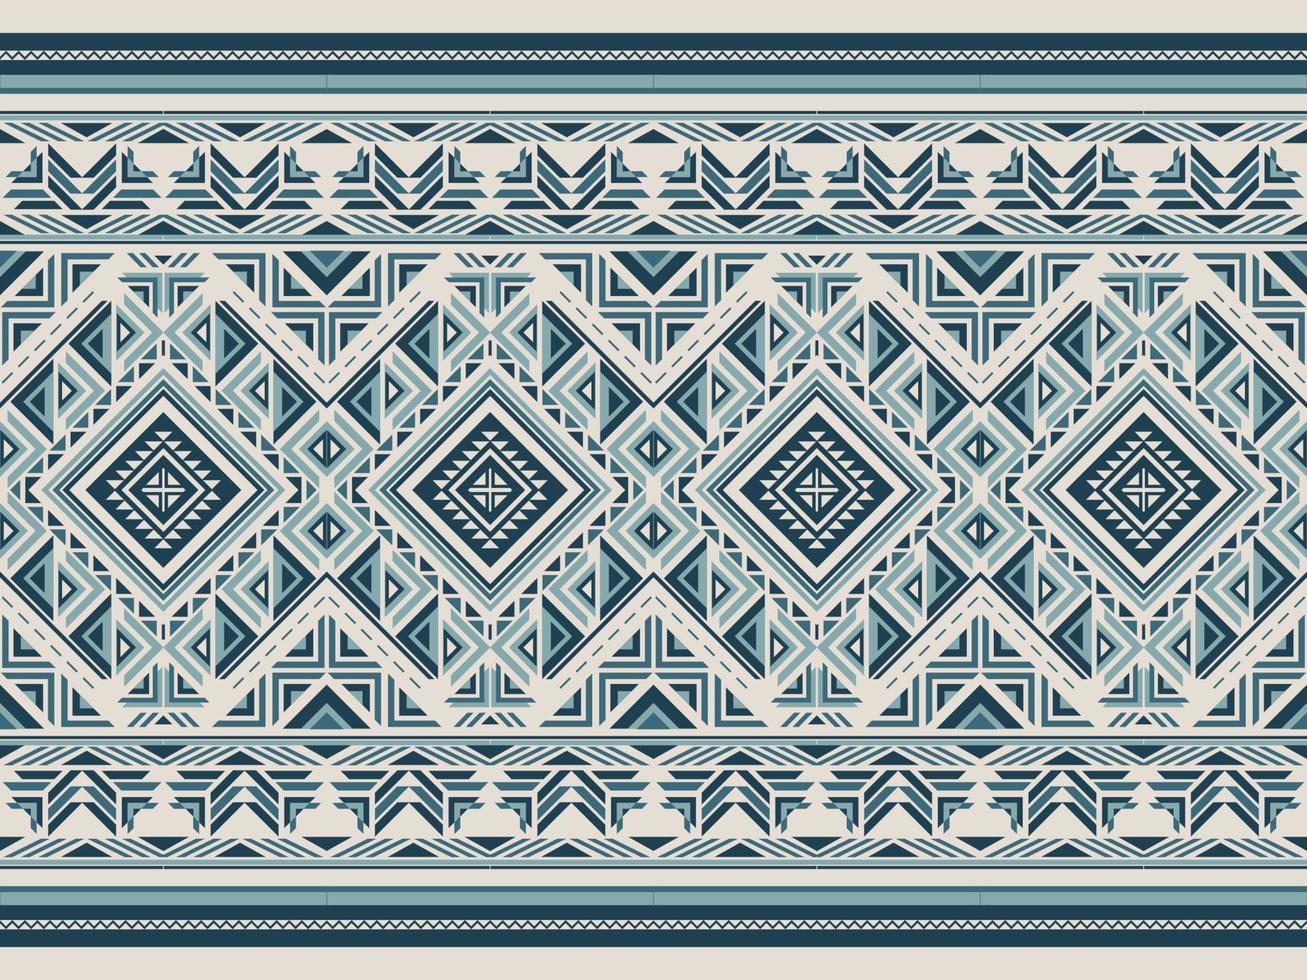 Muster der amerikanischen Ureinwohner indisches Ornamentmuster geometrische ethnische Textilstruktur Stammes- Aztekenmuster Navajo mexikanischer Stoff nahtlose Vektordekoration vektor